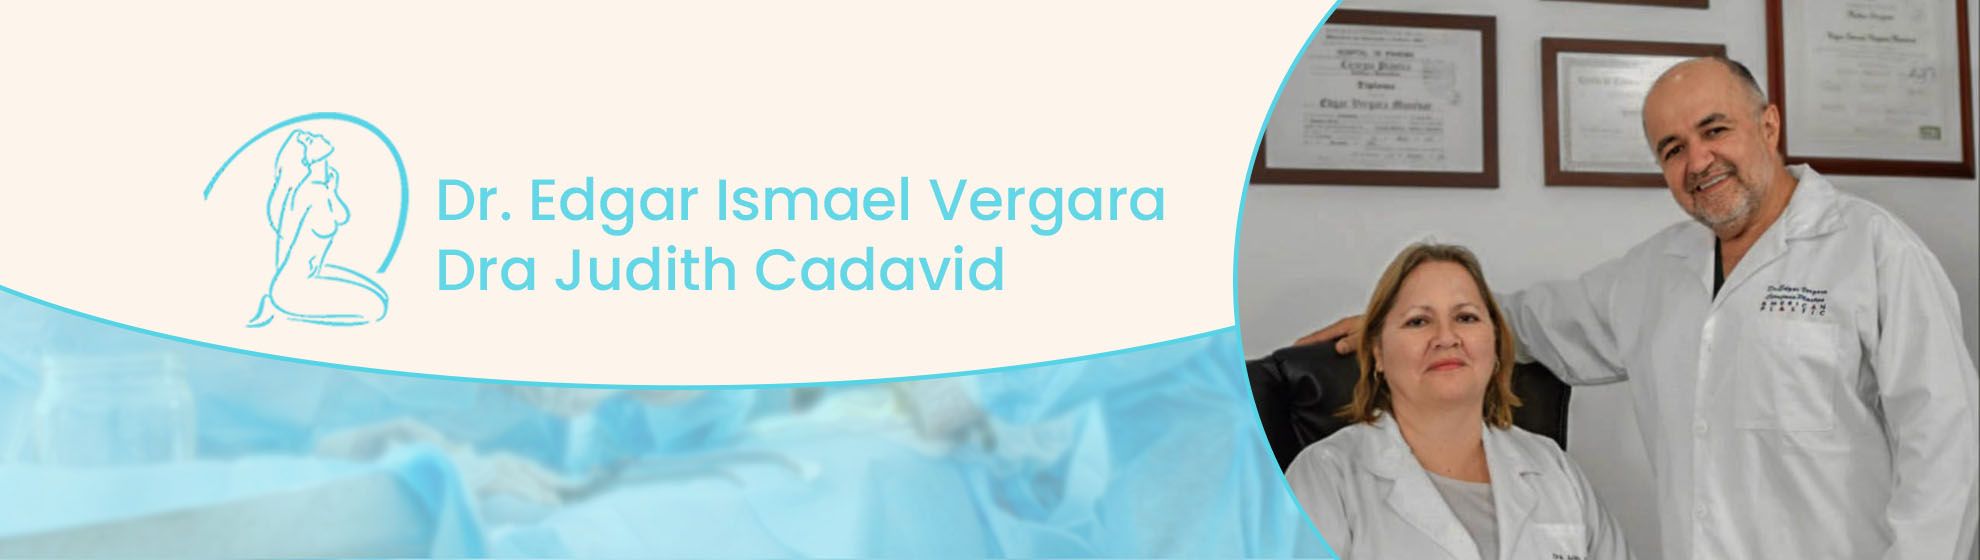 Dr. Edgar Ismael Vergara y Dra Judith Cadavid.